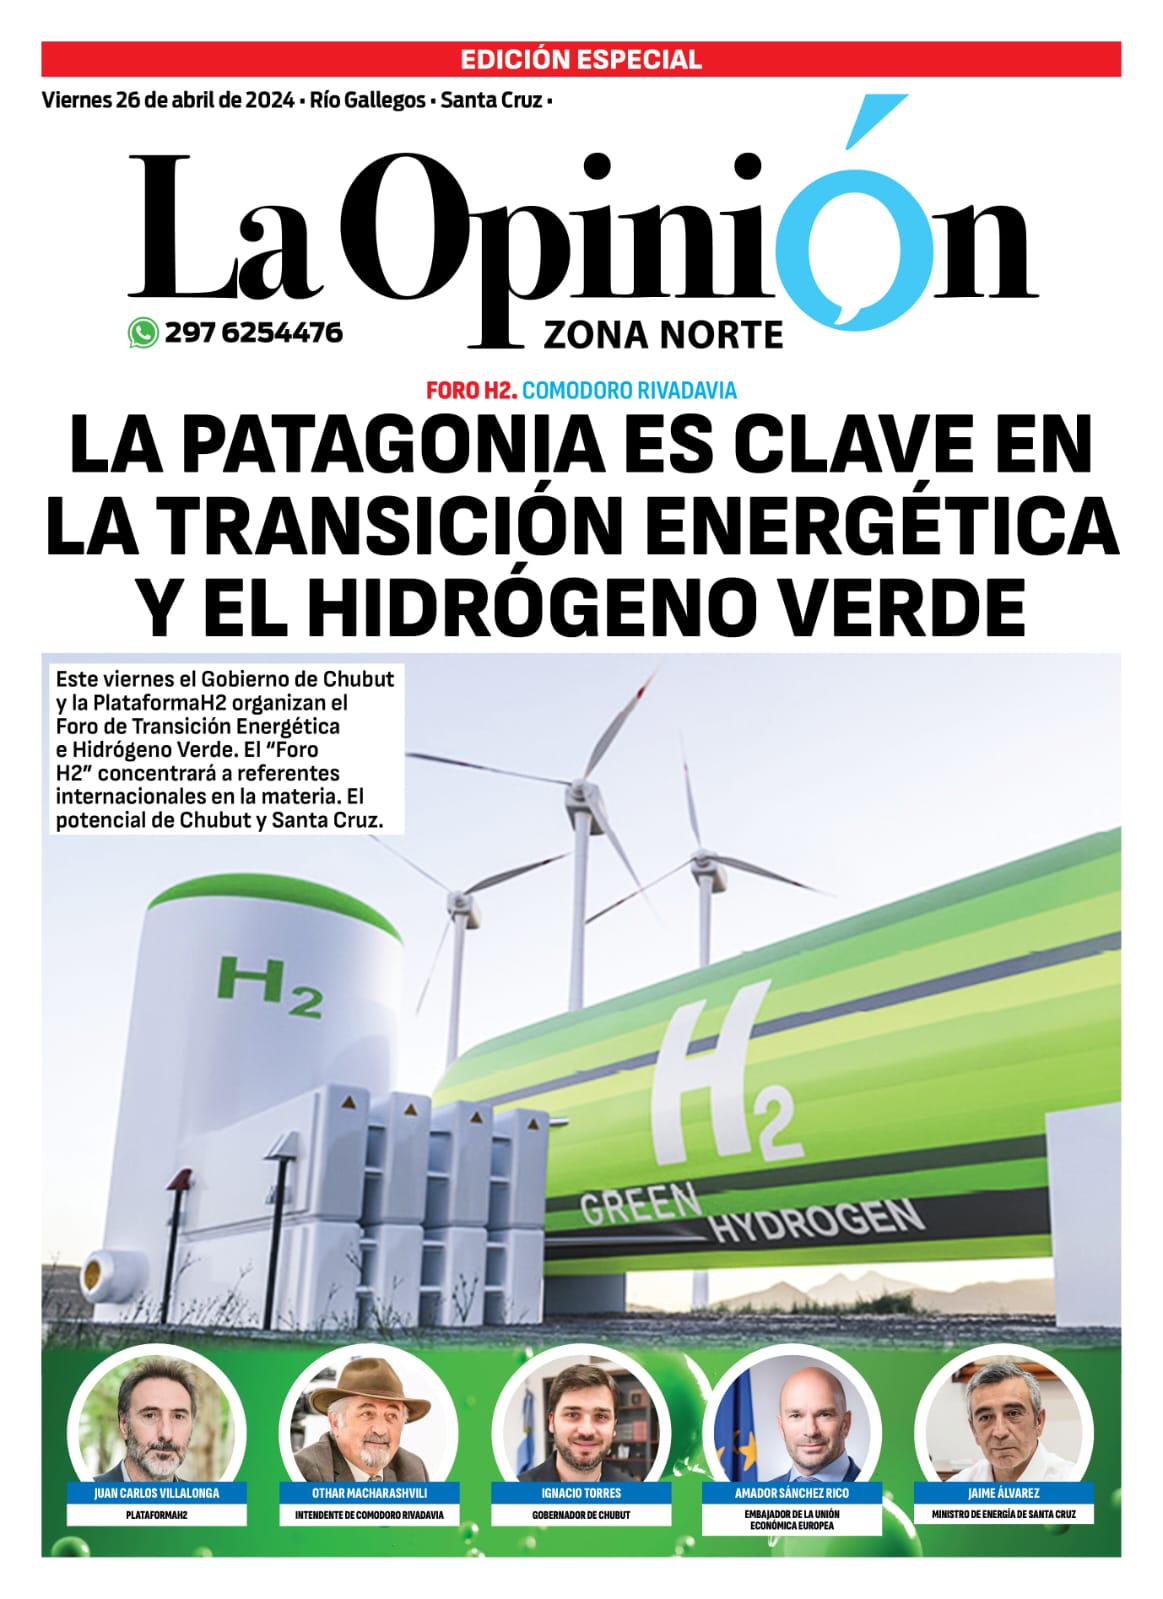 Tapa Especial de La Opinión Austral, la Patagonia es clave en la transición energética y el hidrógeno verde